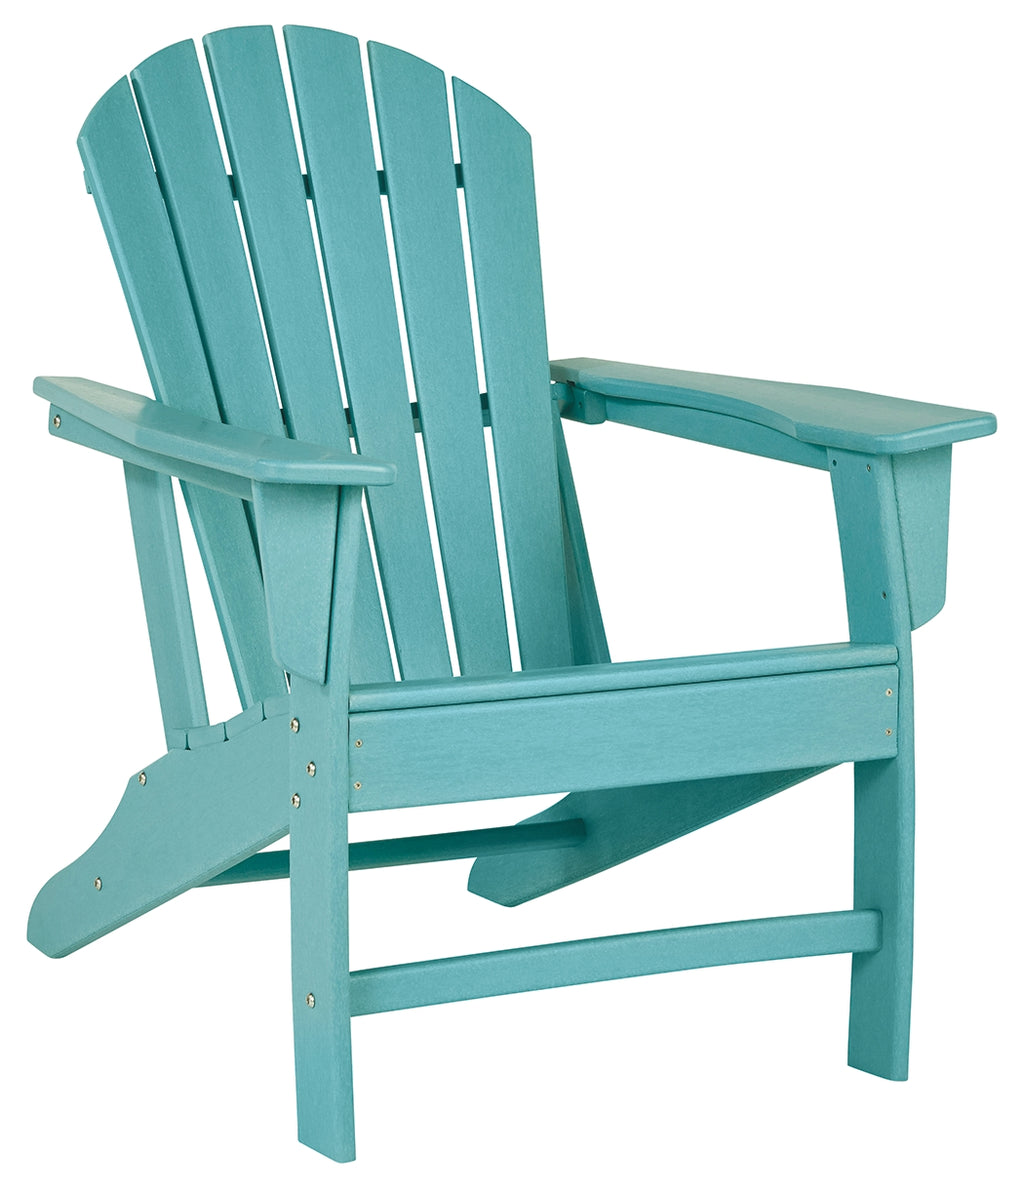 Sundown Treasure P012-898 Turquoise Adirondack Chair